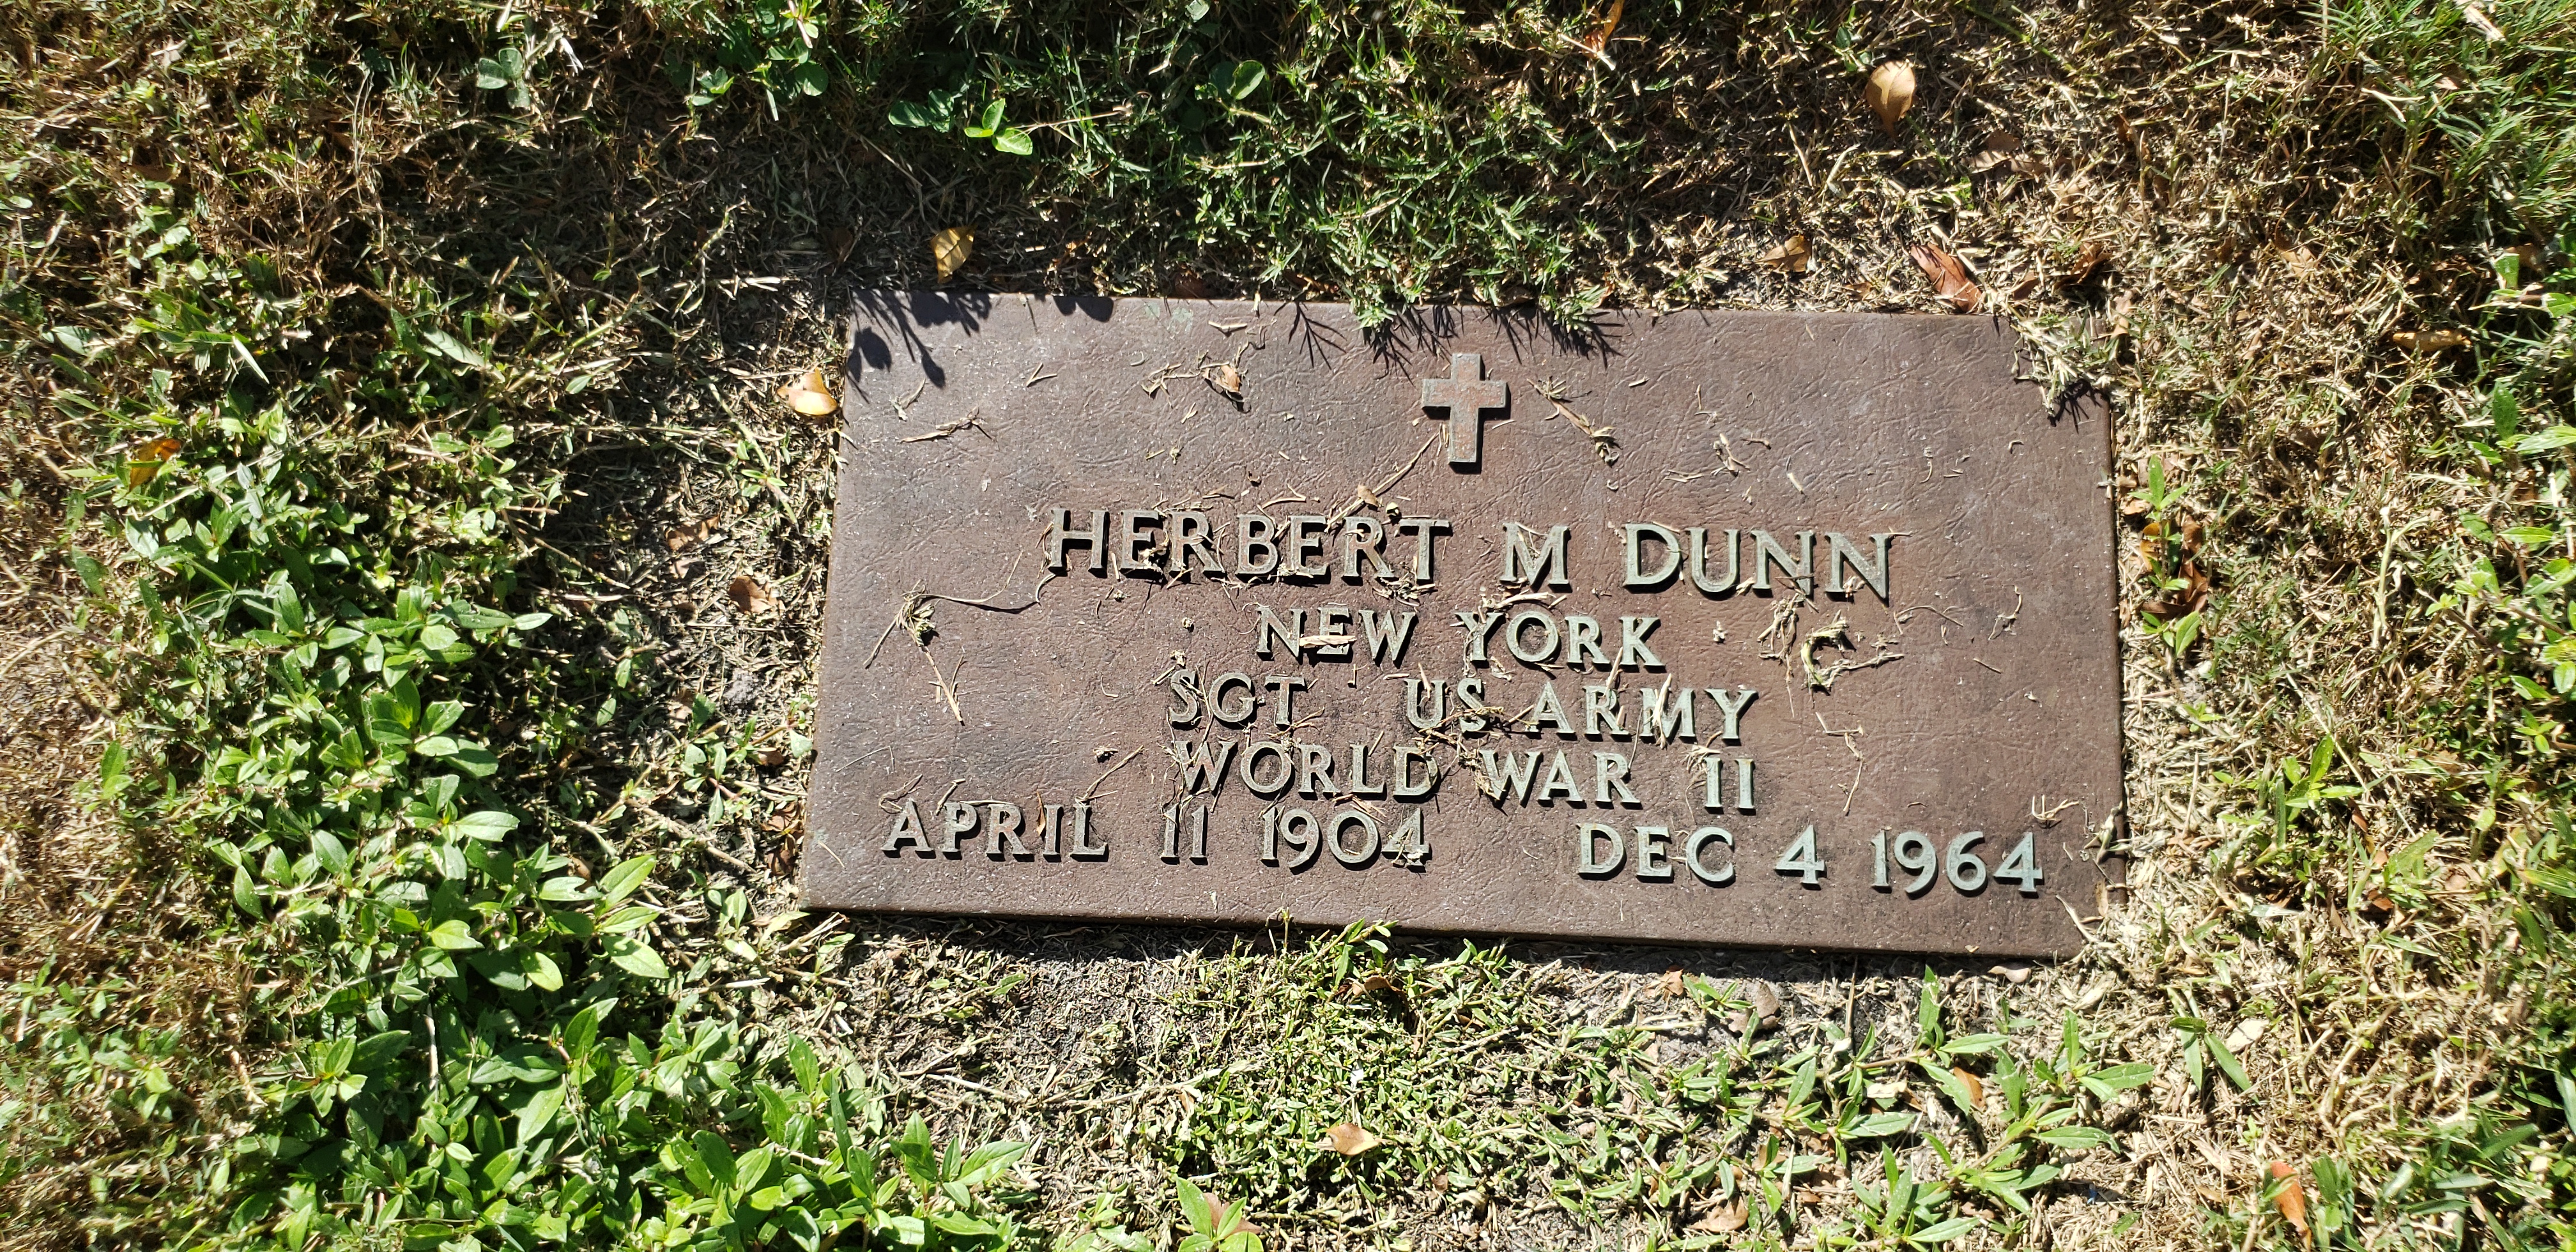 Herbert M Dunn